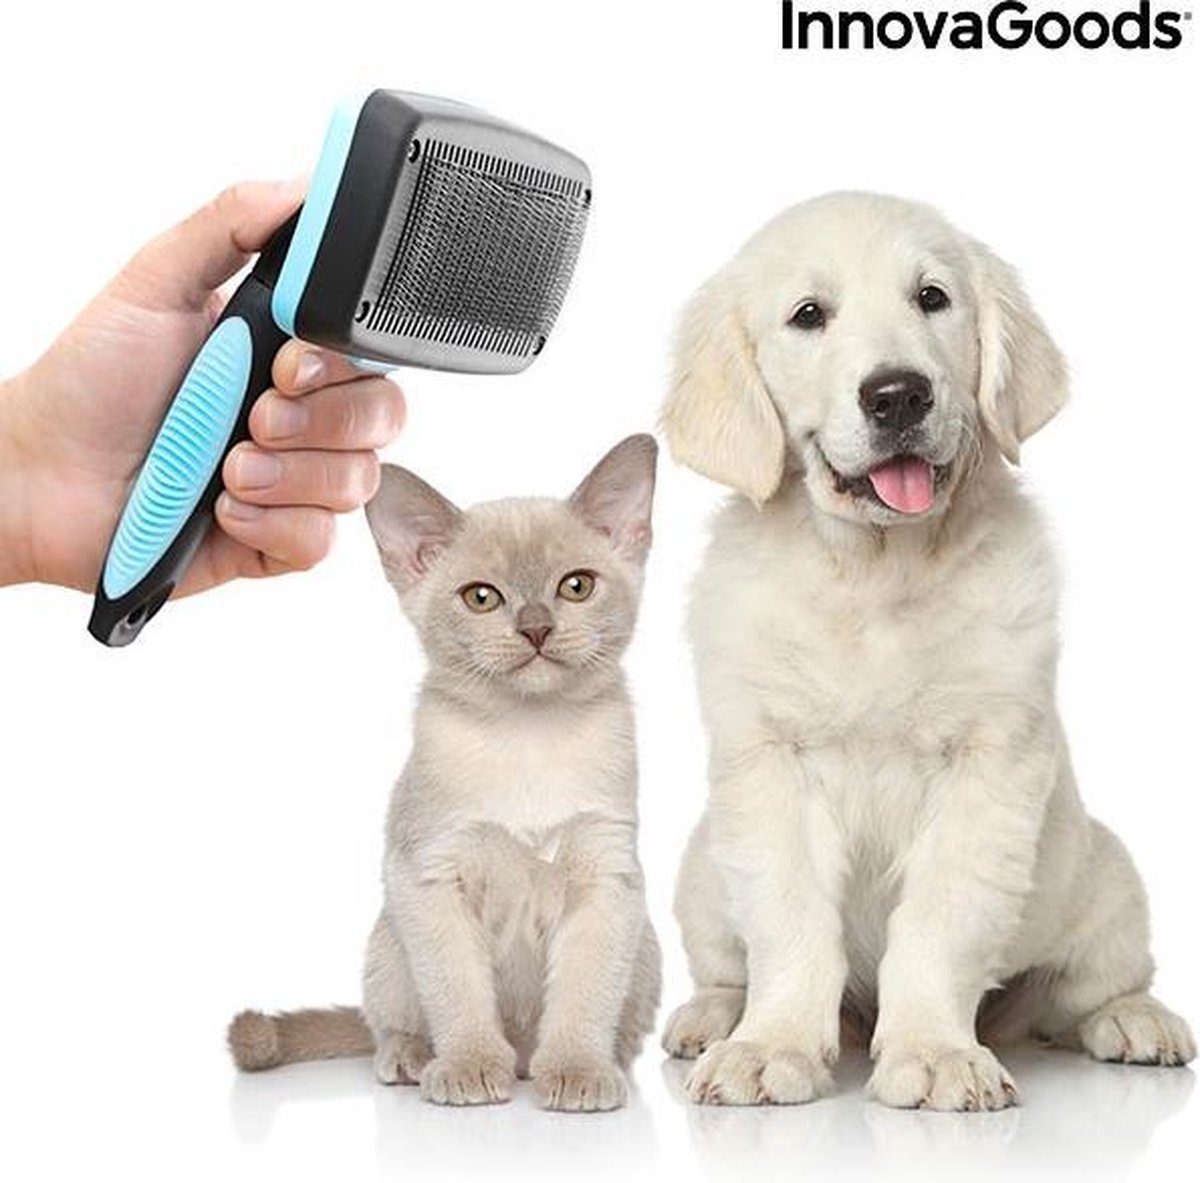 Reinigingsborstel voor Huisdieren met Intrekbare Borstelharen - Huisdierhaar Verwijderaar - Haarverwijderaar - Pluizenborstel - Haarvanger - Honden en Kattenhaar Verwijderaar